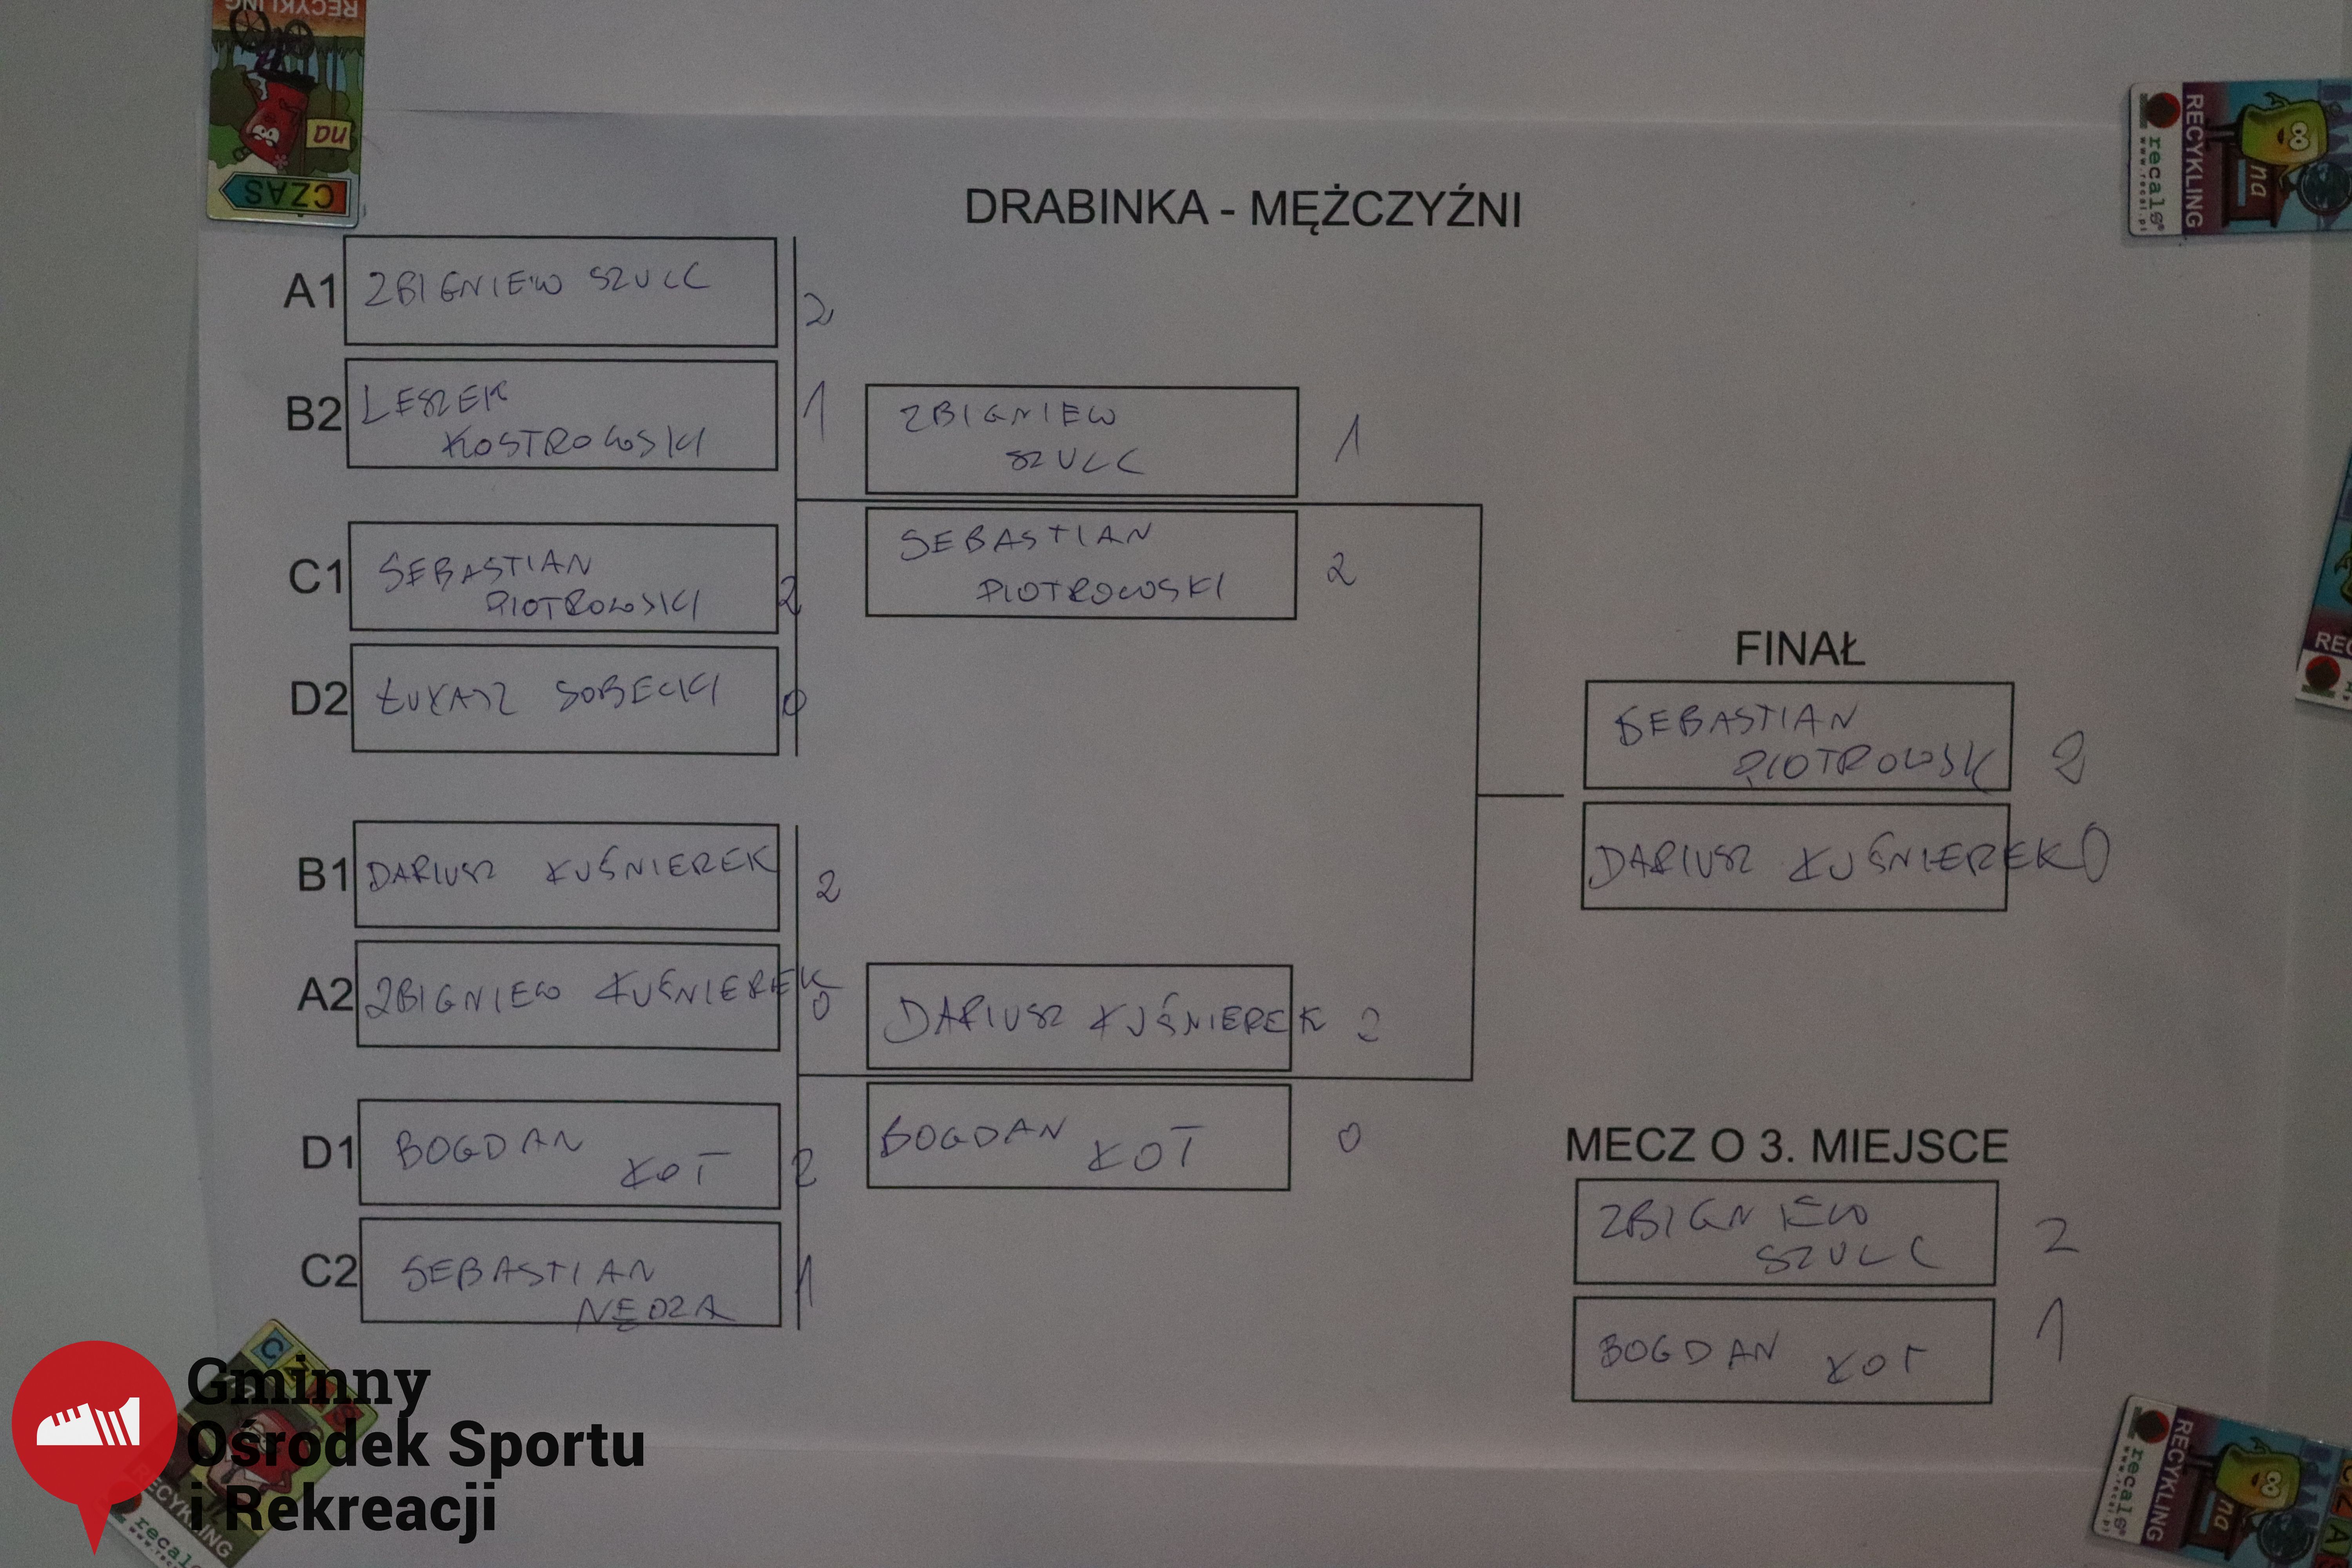 2022.02.12 -Mistrzostwa Gminy Woszakowice w tenisie stoowym124.jpg - 2,46 MB